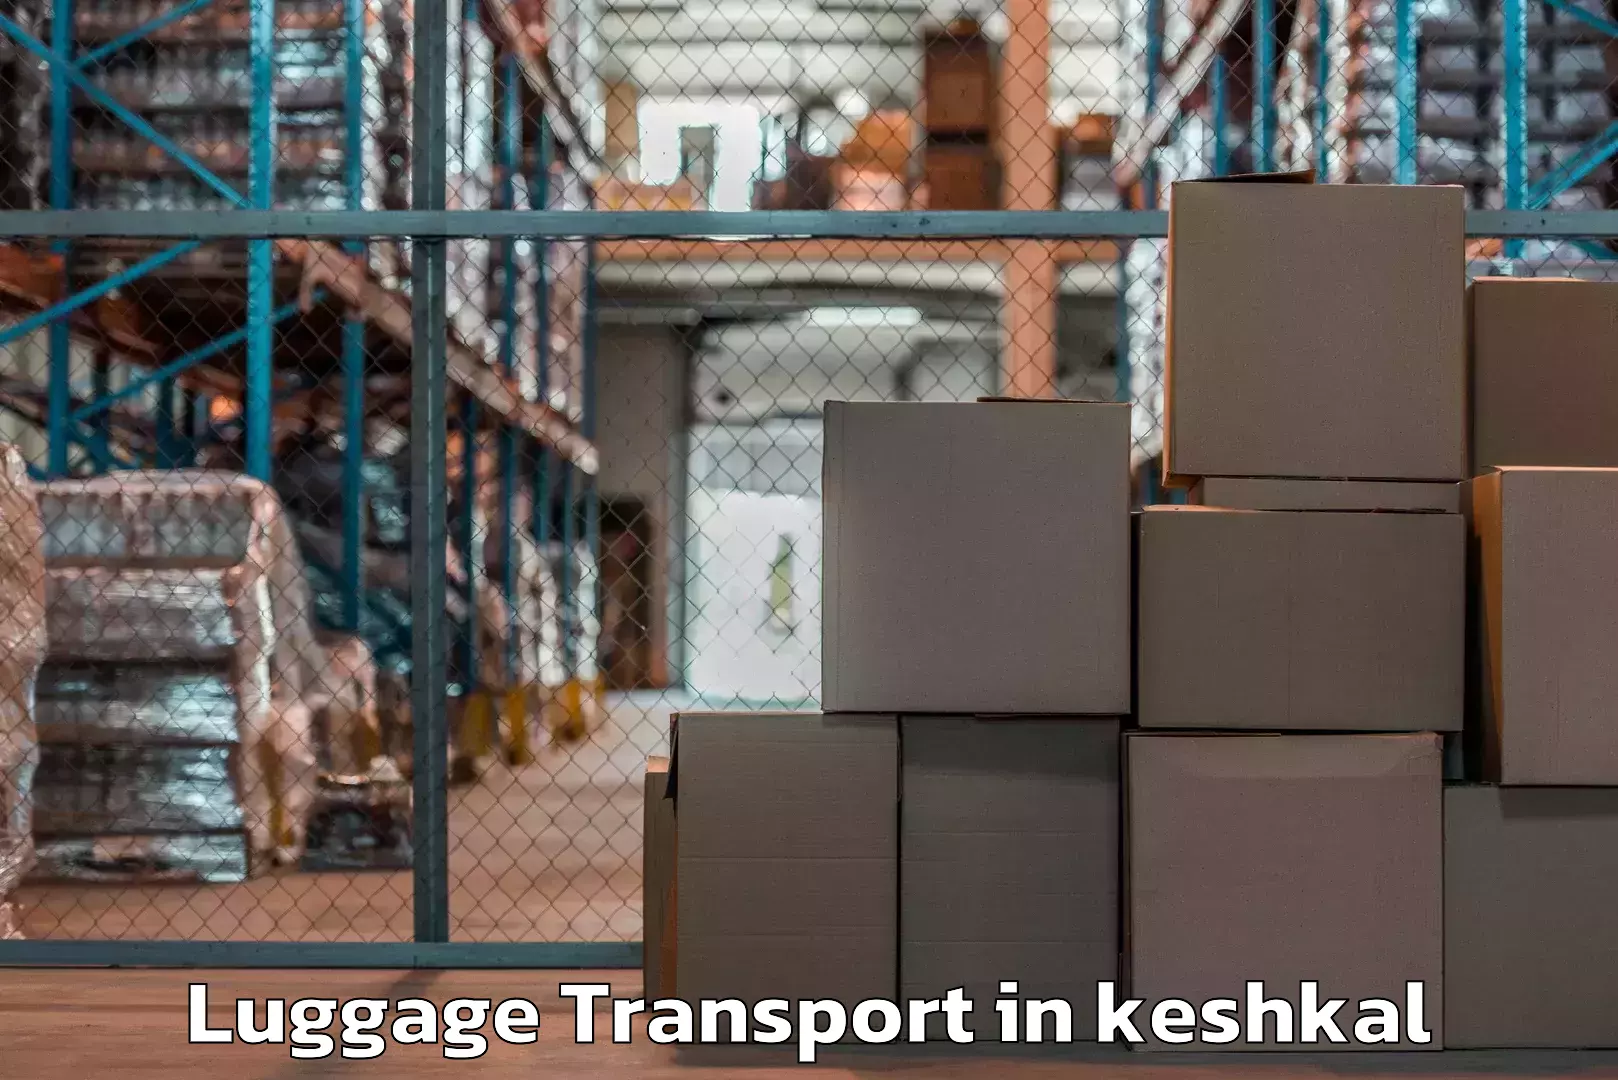 Quick baggage pickup in keshkal